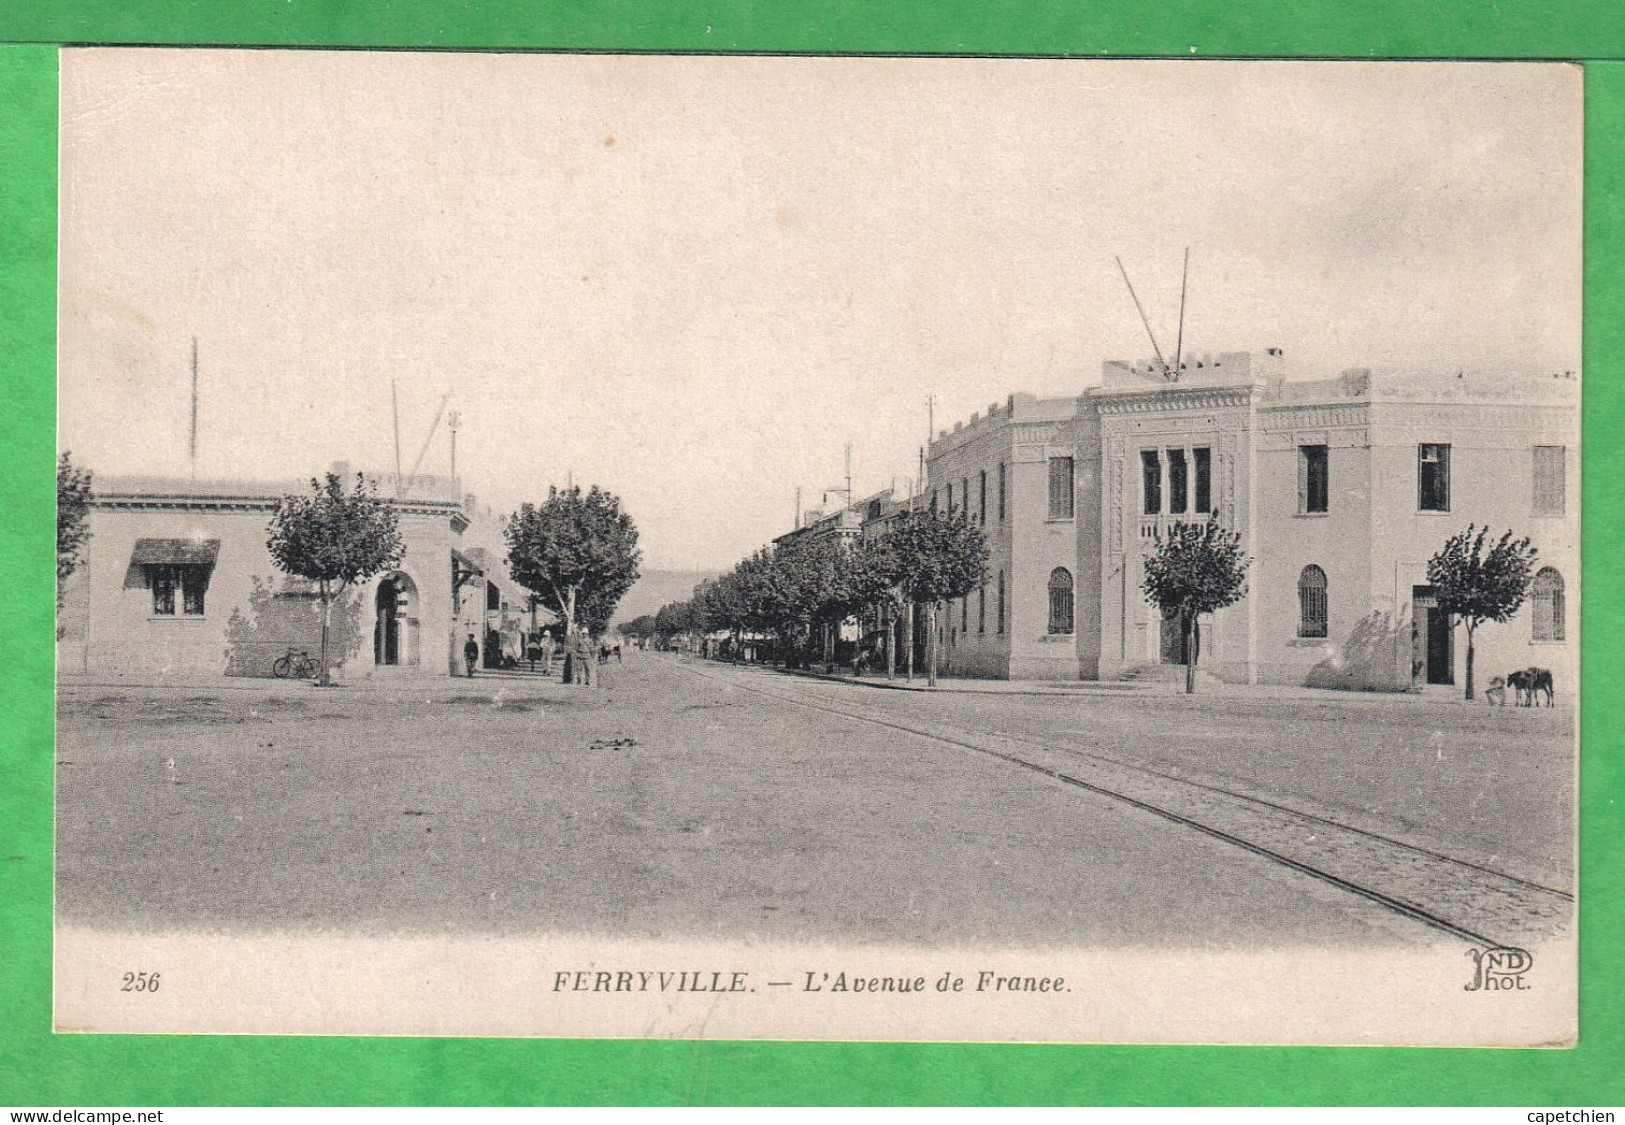 FERRYVILLE - L'AVENUE DE FRANCE - Tunisie